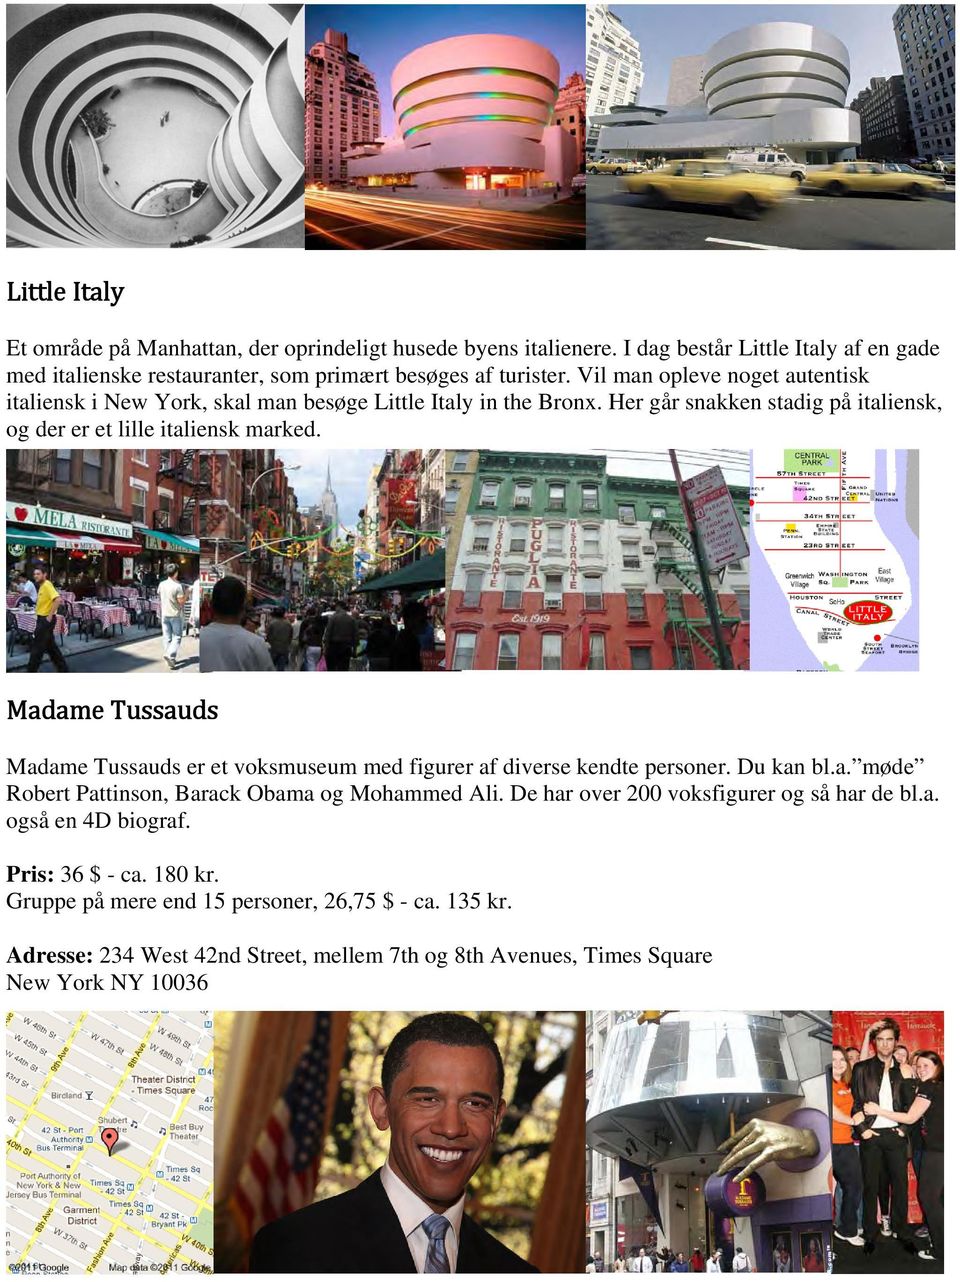 Madame Tussauds Madame Tussauds er et voksmuseum med figurer af diverse kendte personer. Du kan bl.a. møde Robert Pattinson, Barack Obama og Mohammed Ali.